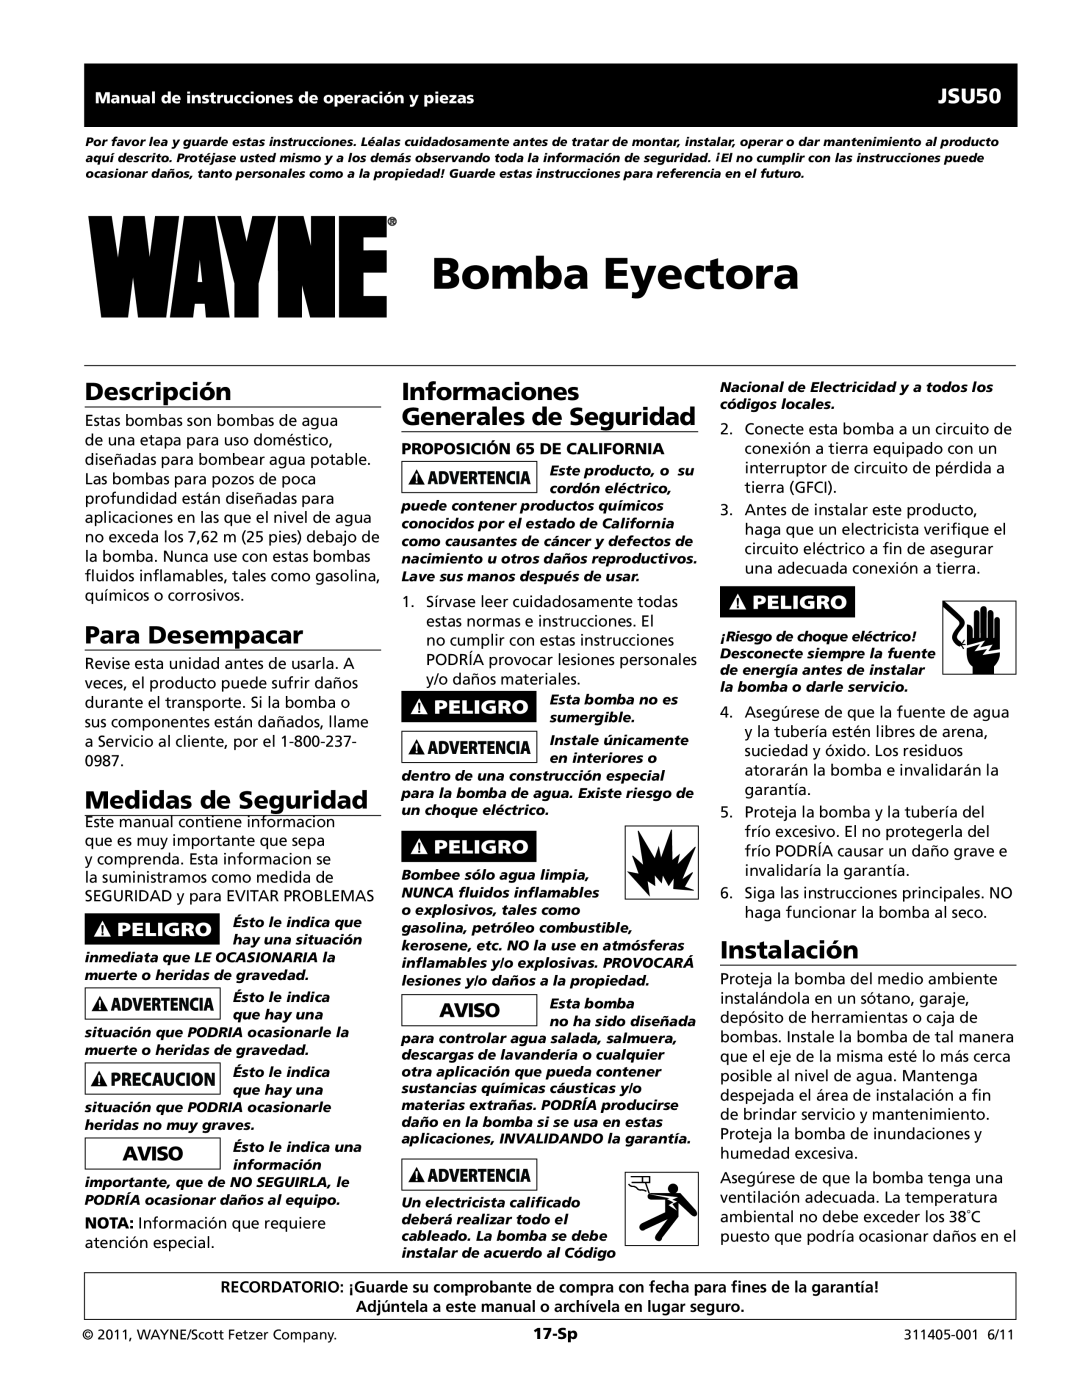 Wayne JSU50 Bomba Eyectora, Descripción, Para Desempacar, Medidas de Seguridad, Informaciones Generales de Seguridad 